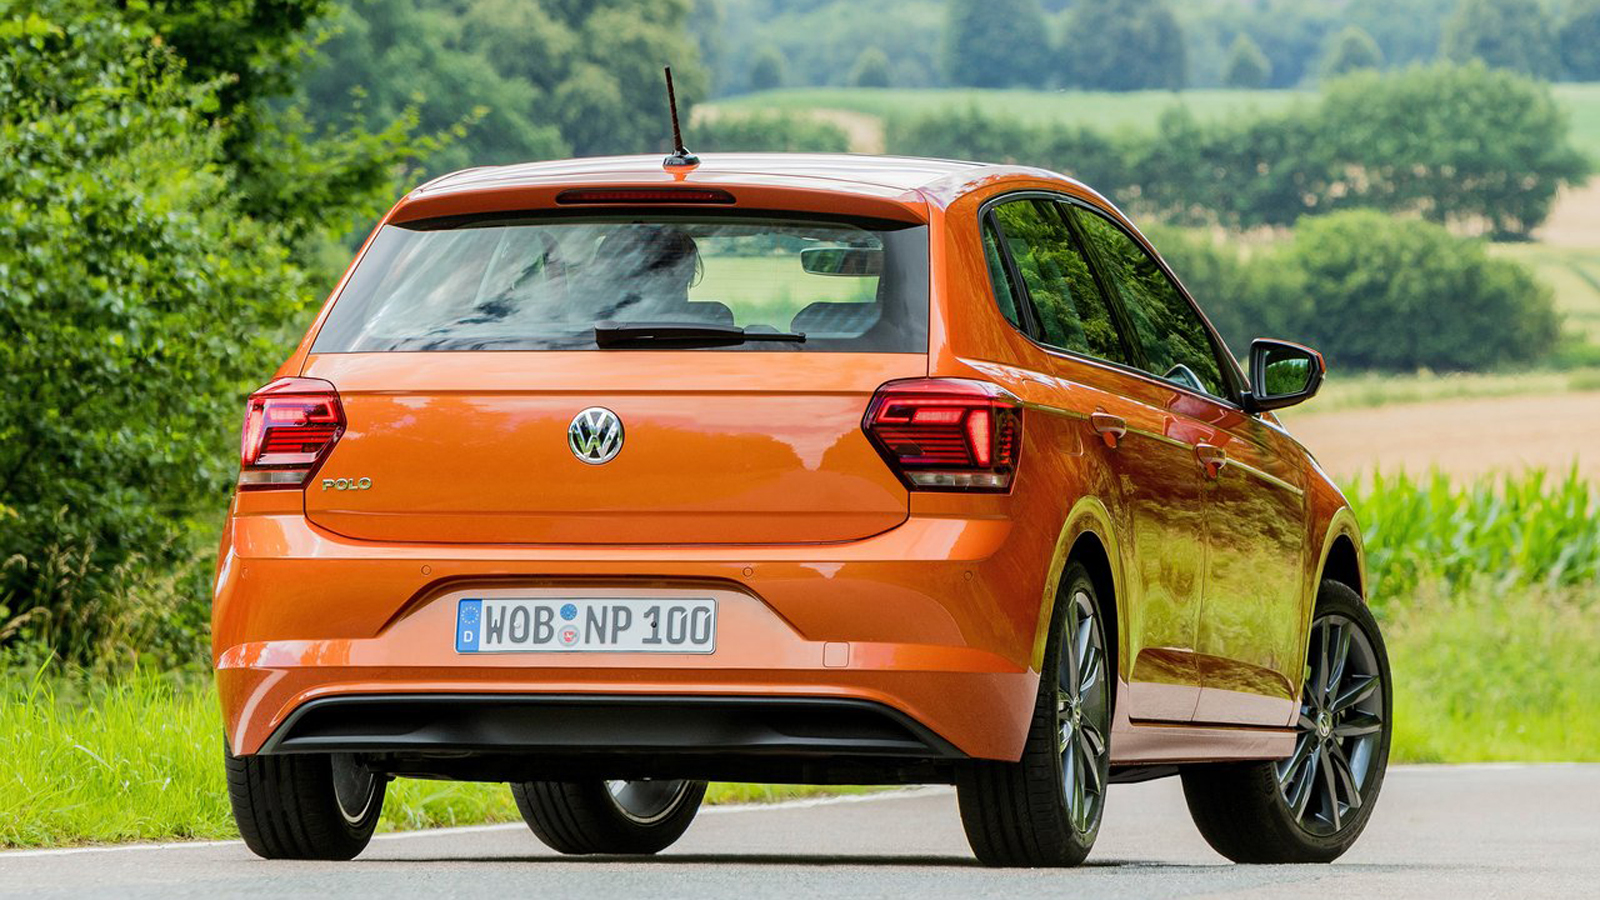 Το VW Polo έχει «αέρα» μικρομεσαίου, τόσο στην εμφάνιση όσο και στη συμπεριφορά